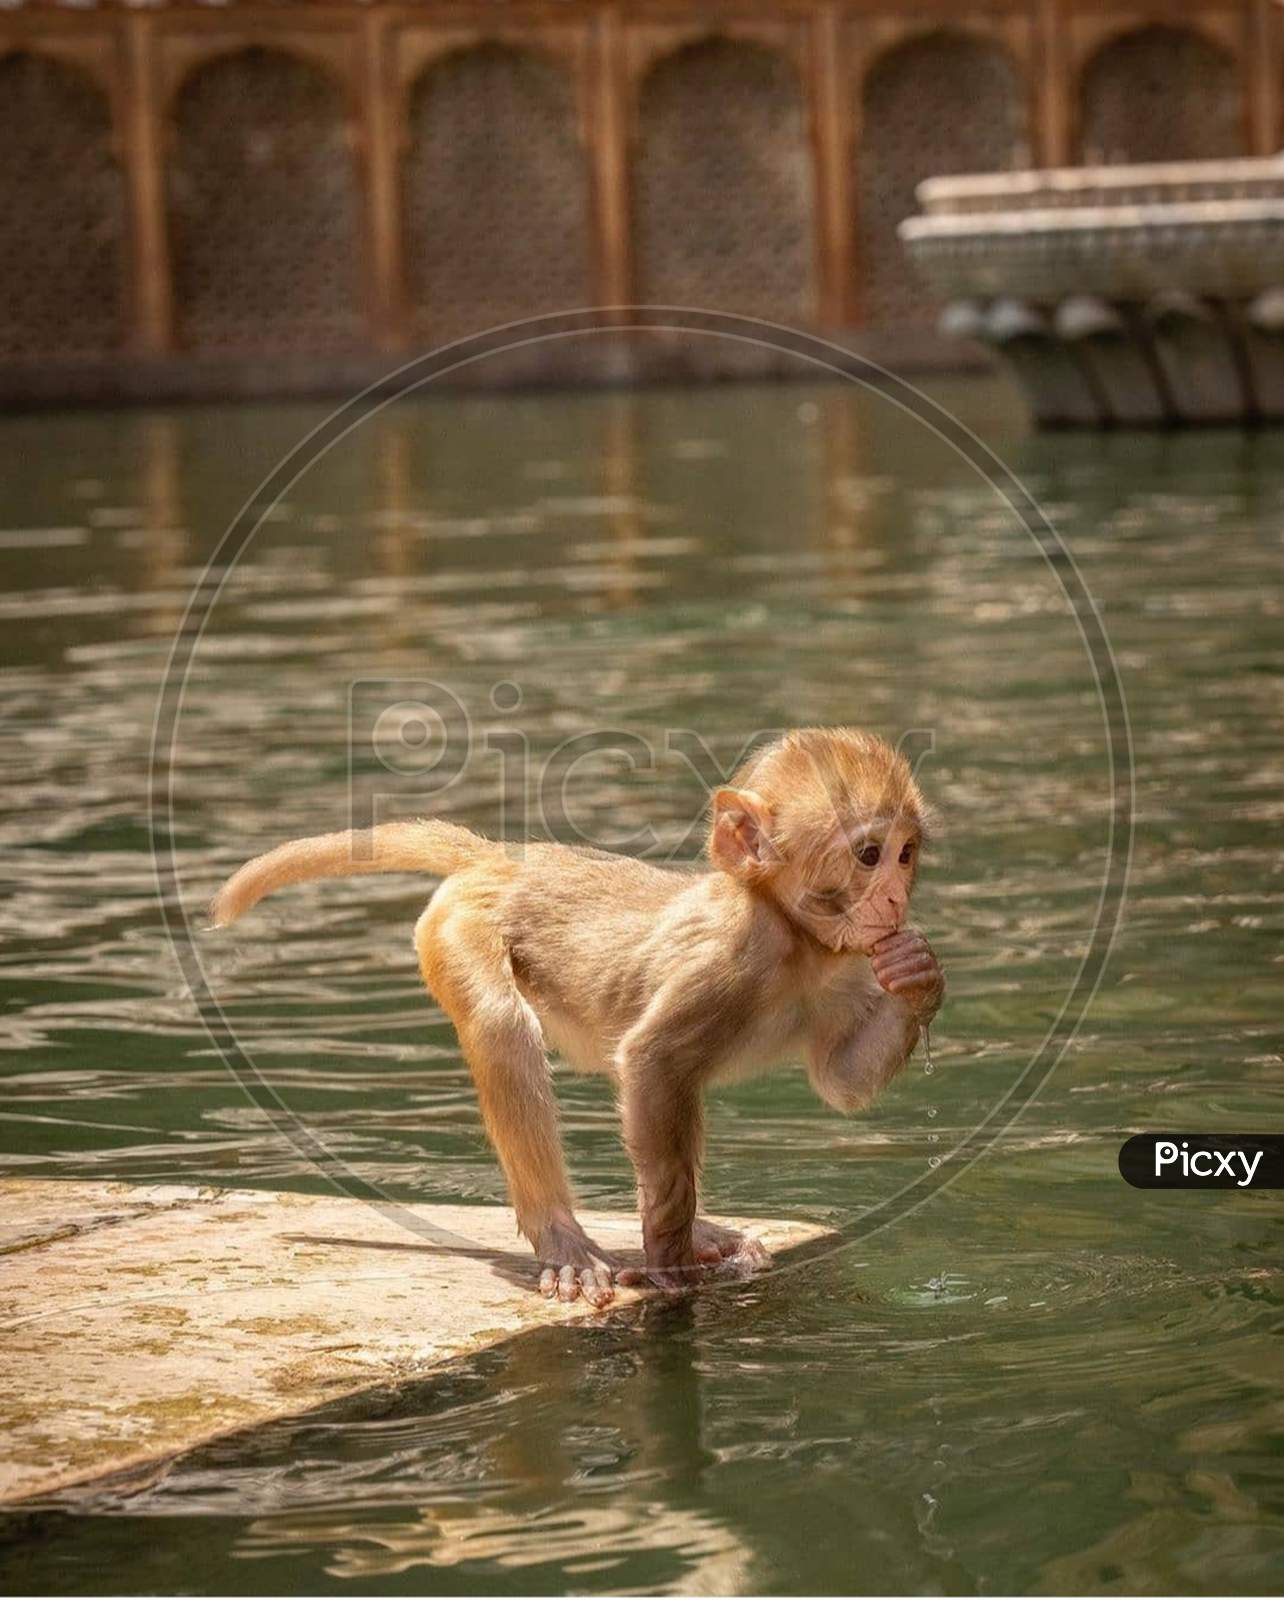 Monkey, mammal, tail, water